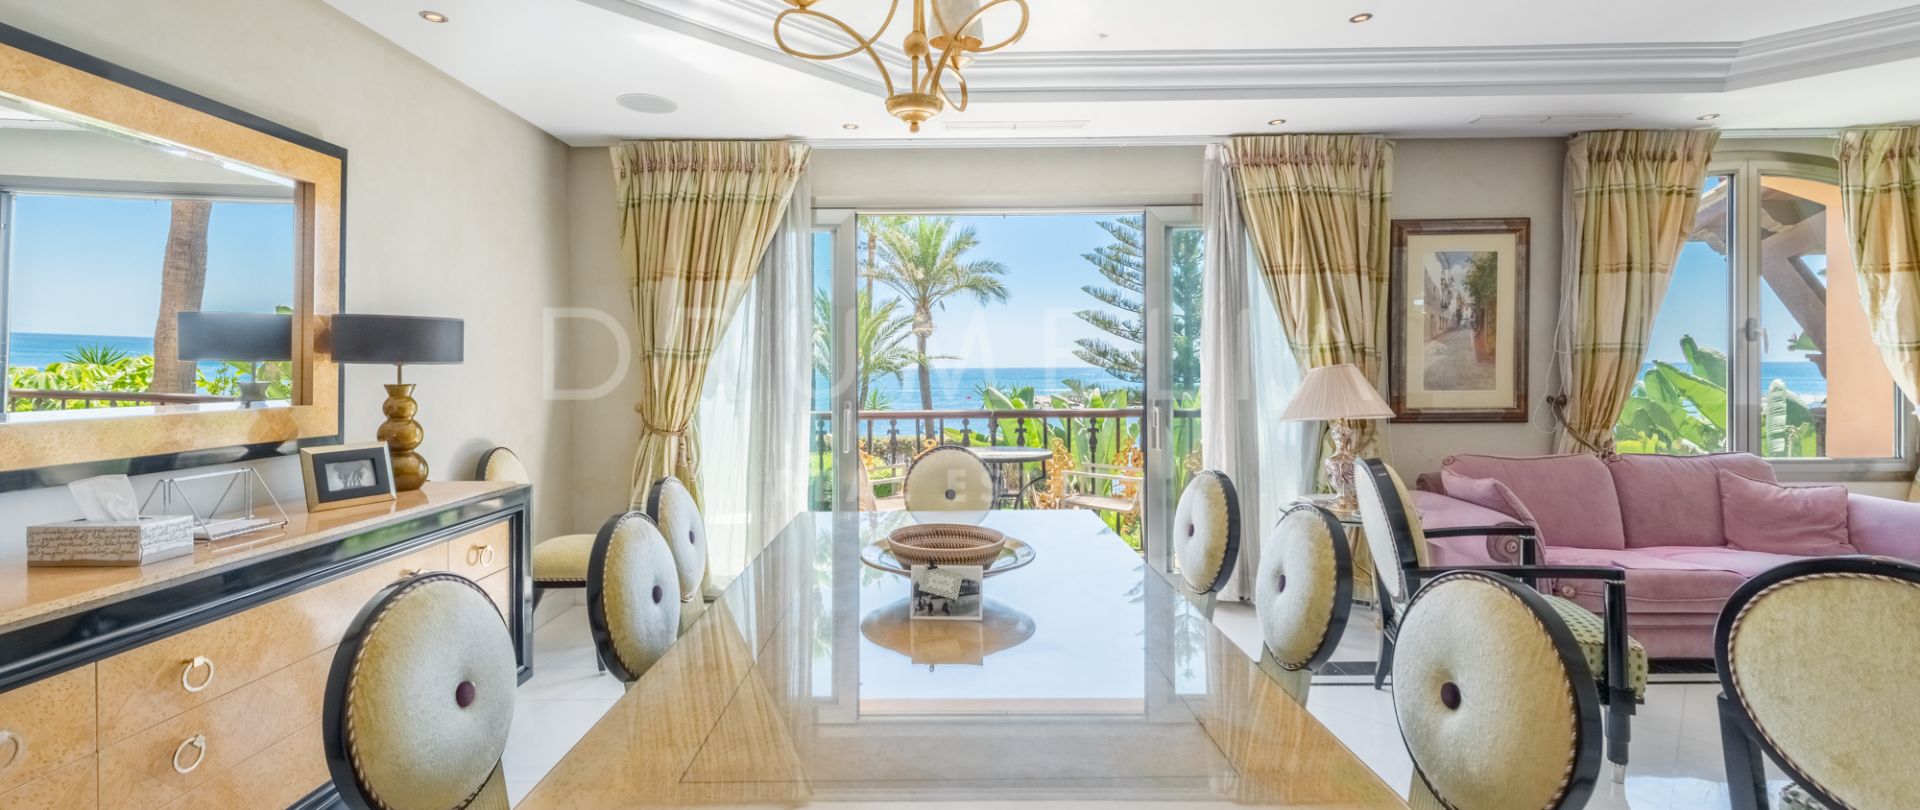 Appartement de luxe en première ligne de plage avec une vue imprenable sur la mer dans le quartier de Puerto Banus, Marbella